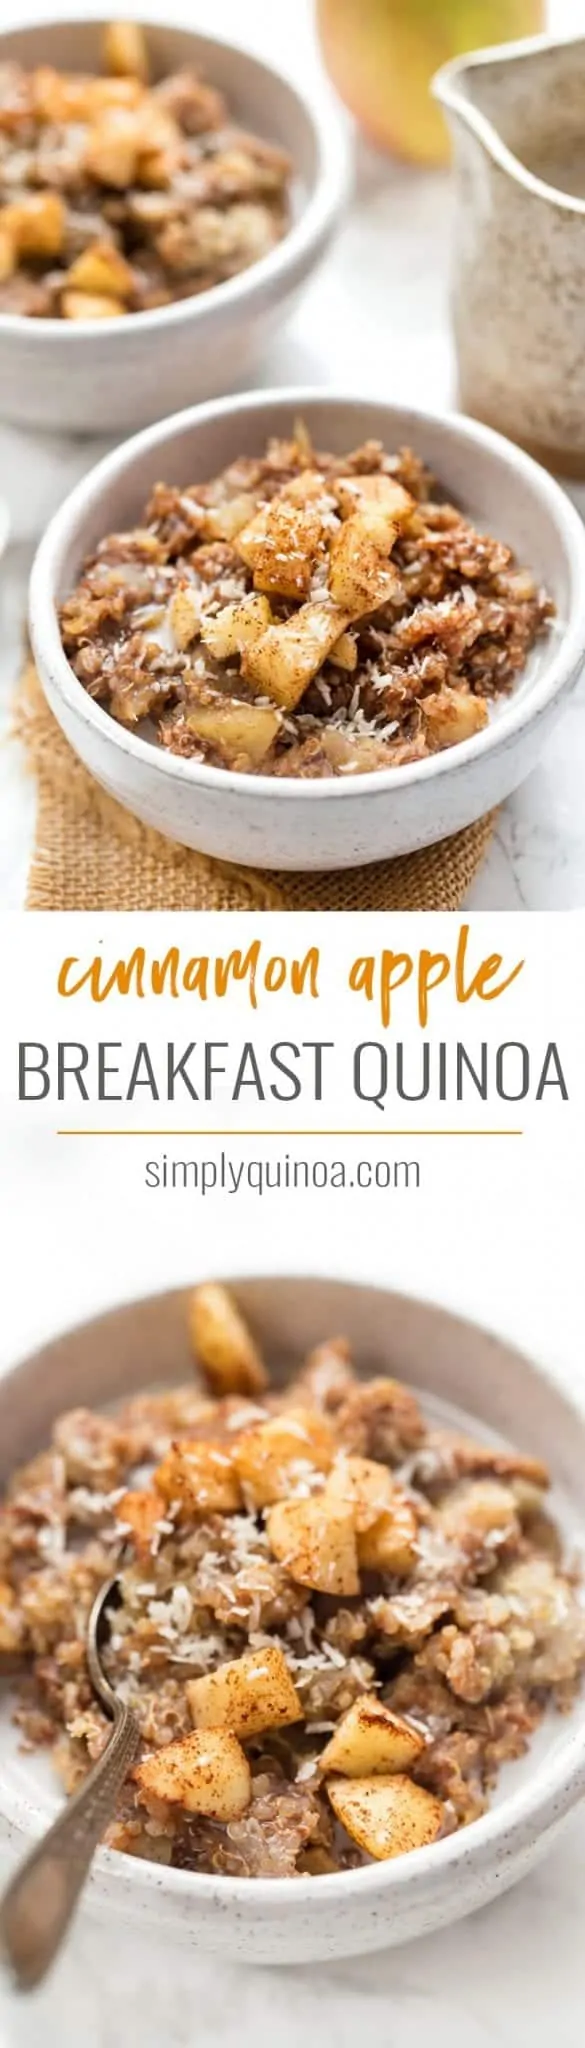 how to make cinnamon apple breakfast quinoa recipe